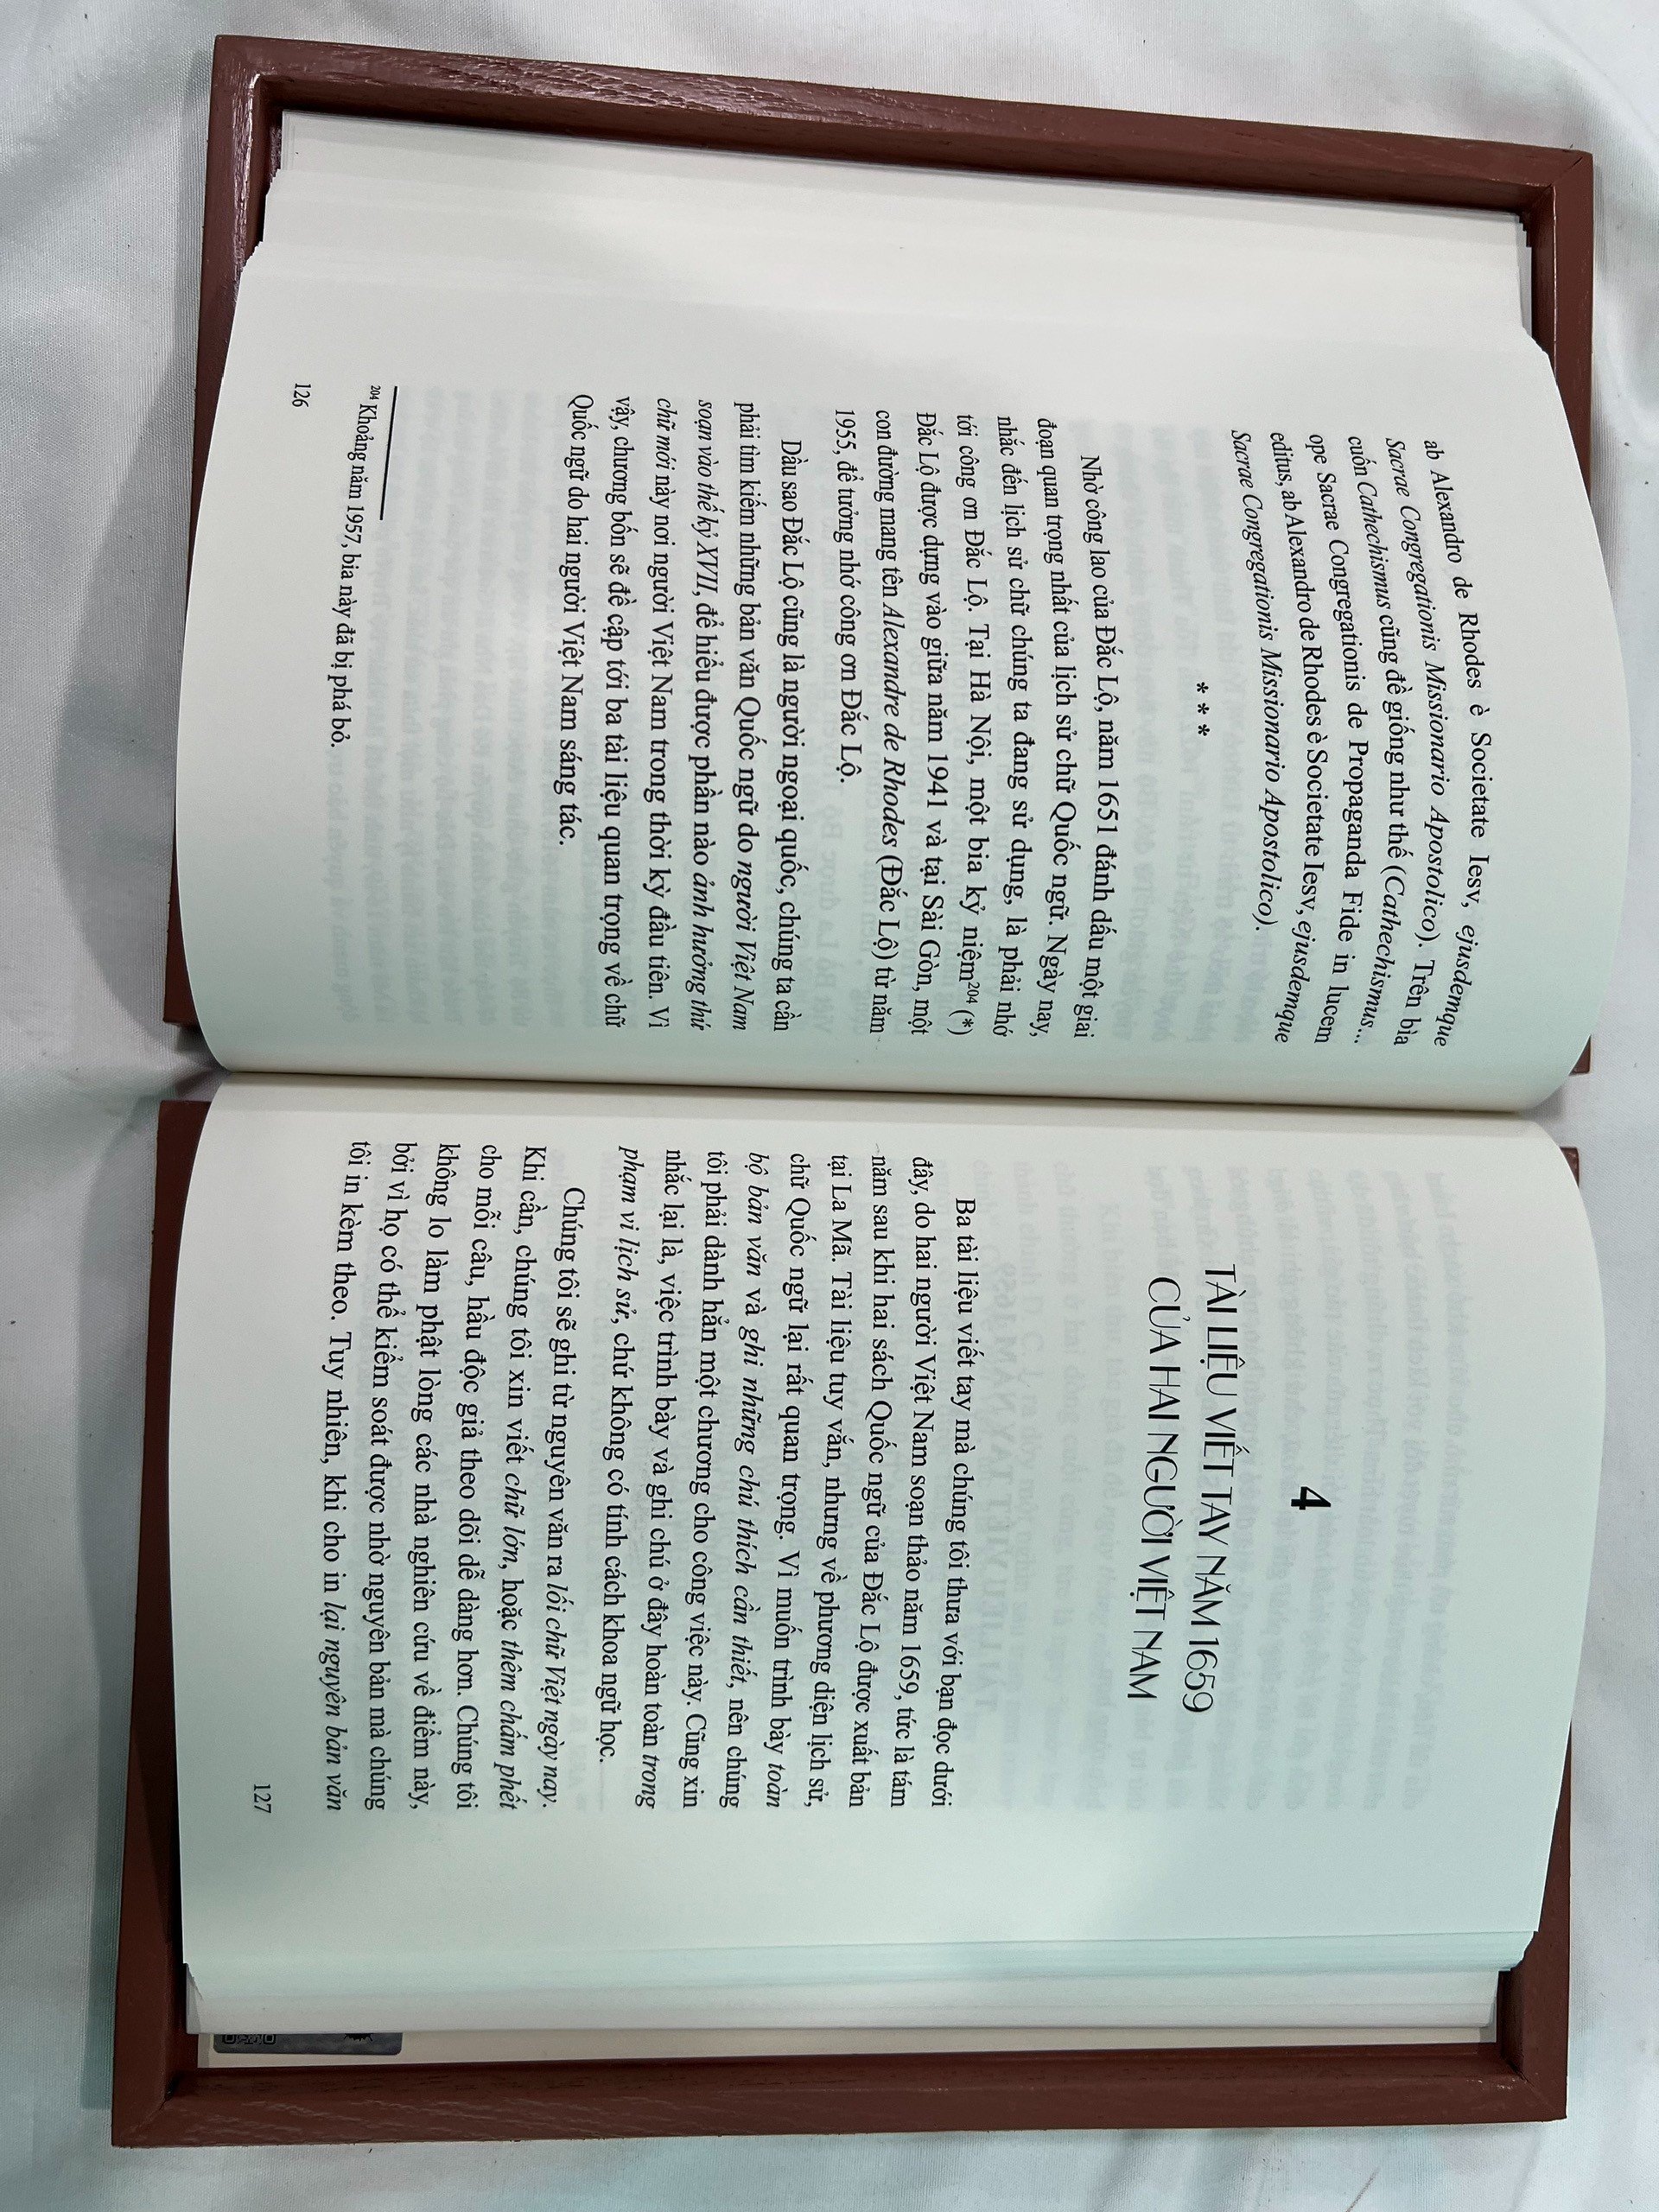 (Ấn bản đặc biệt sách S100) (Bìa gỗ hộp đựng trang trọng, giấy mỹ thuật) LỊCH SỬ CHỮ QUỐC NGỮ (1620-1659) - Đỗ Quang Chính - ThaiHaBooks